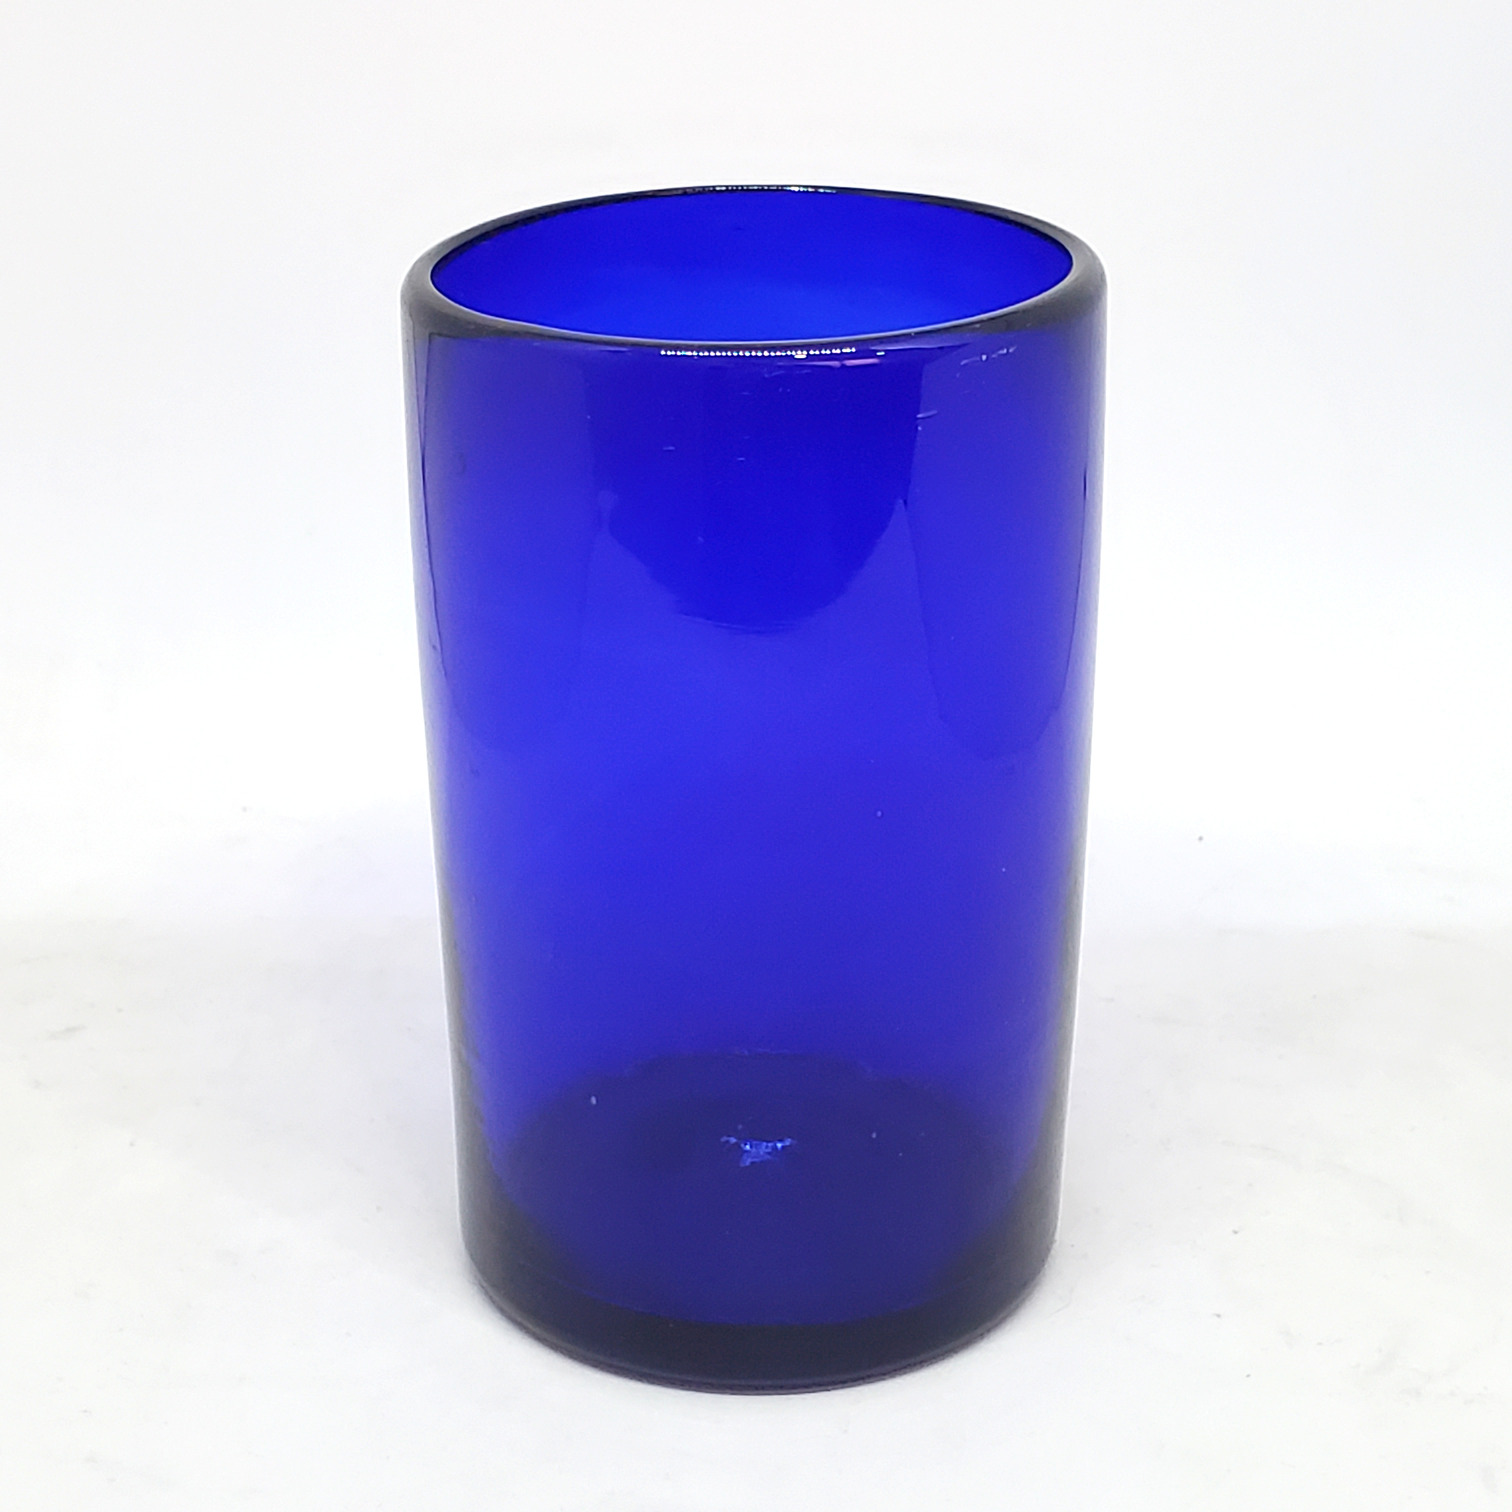 Colores Solidos al Mayoreo / vasos grandes color azul cobalto / Éstos artesanales vasos le darán un toque clásico a su bebida favorita.